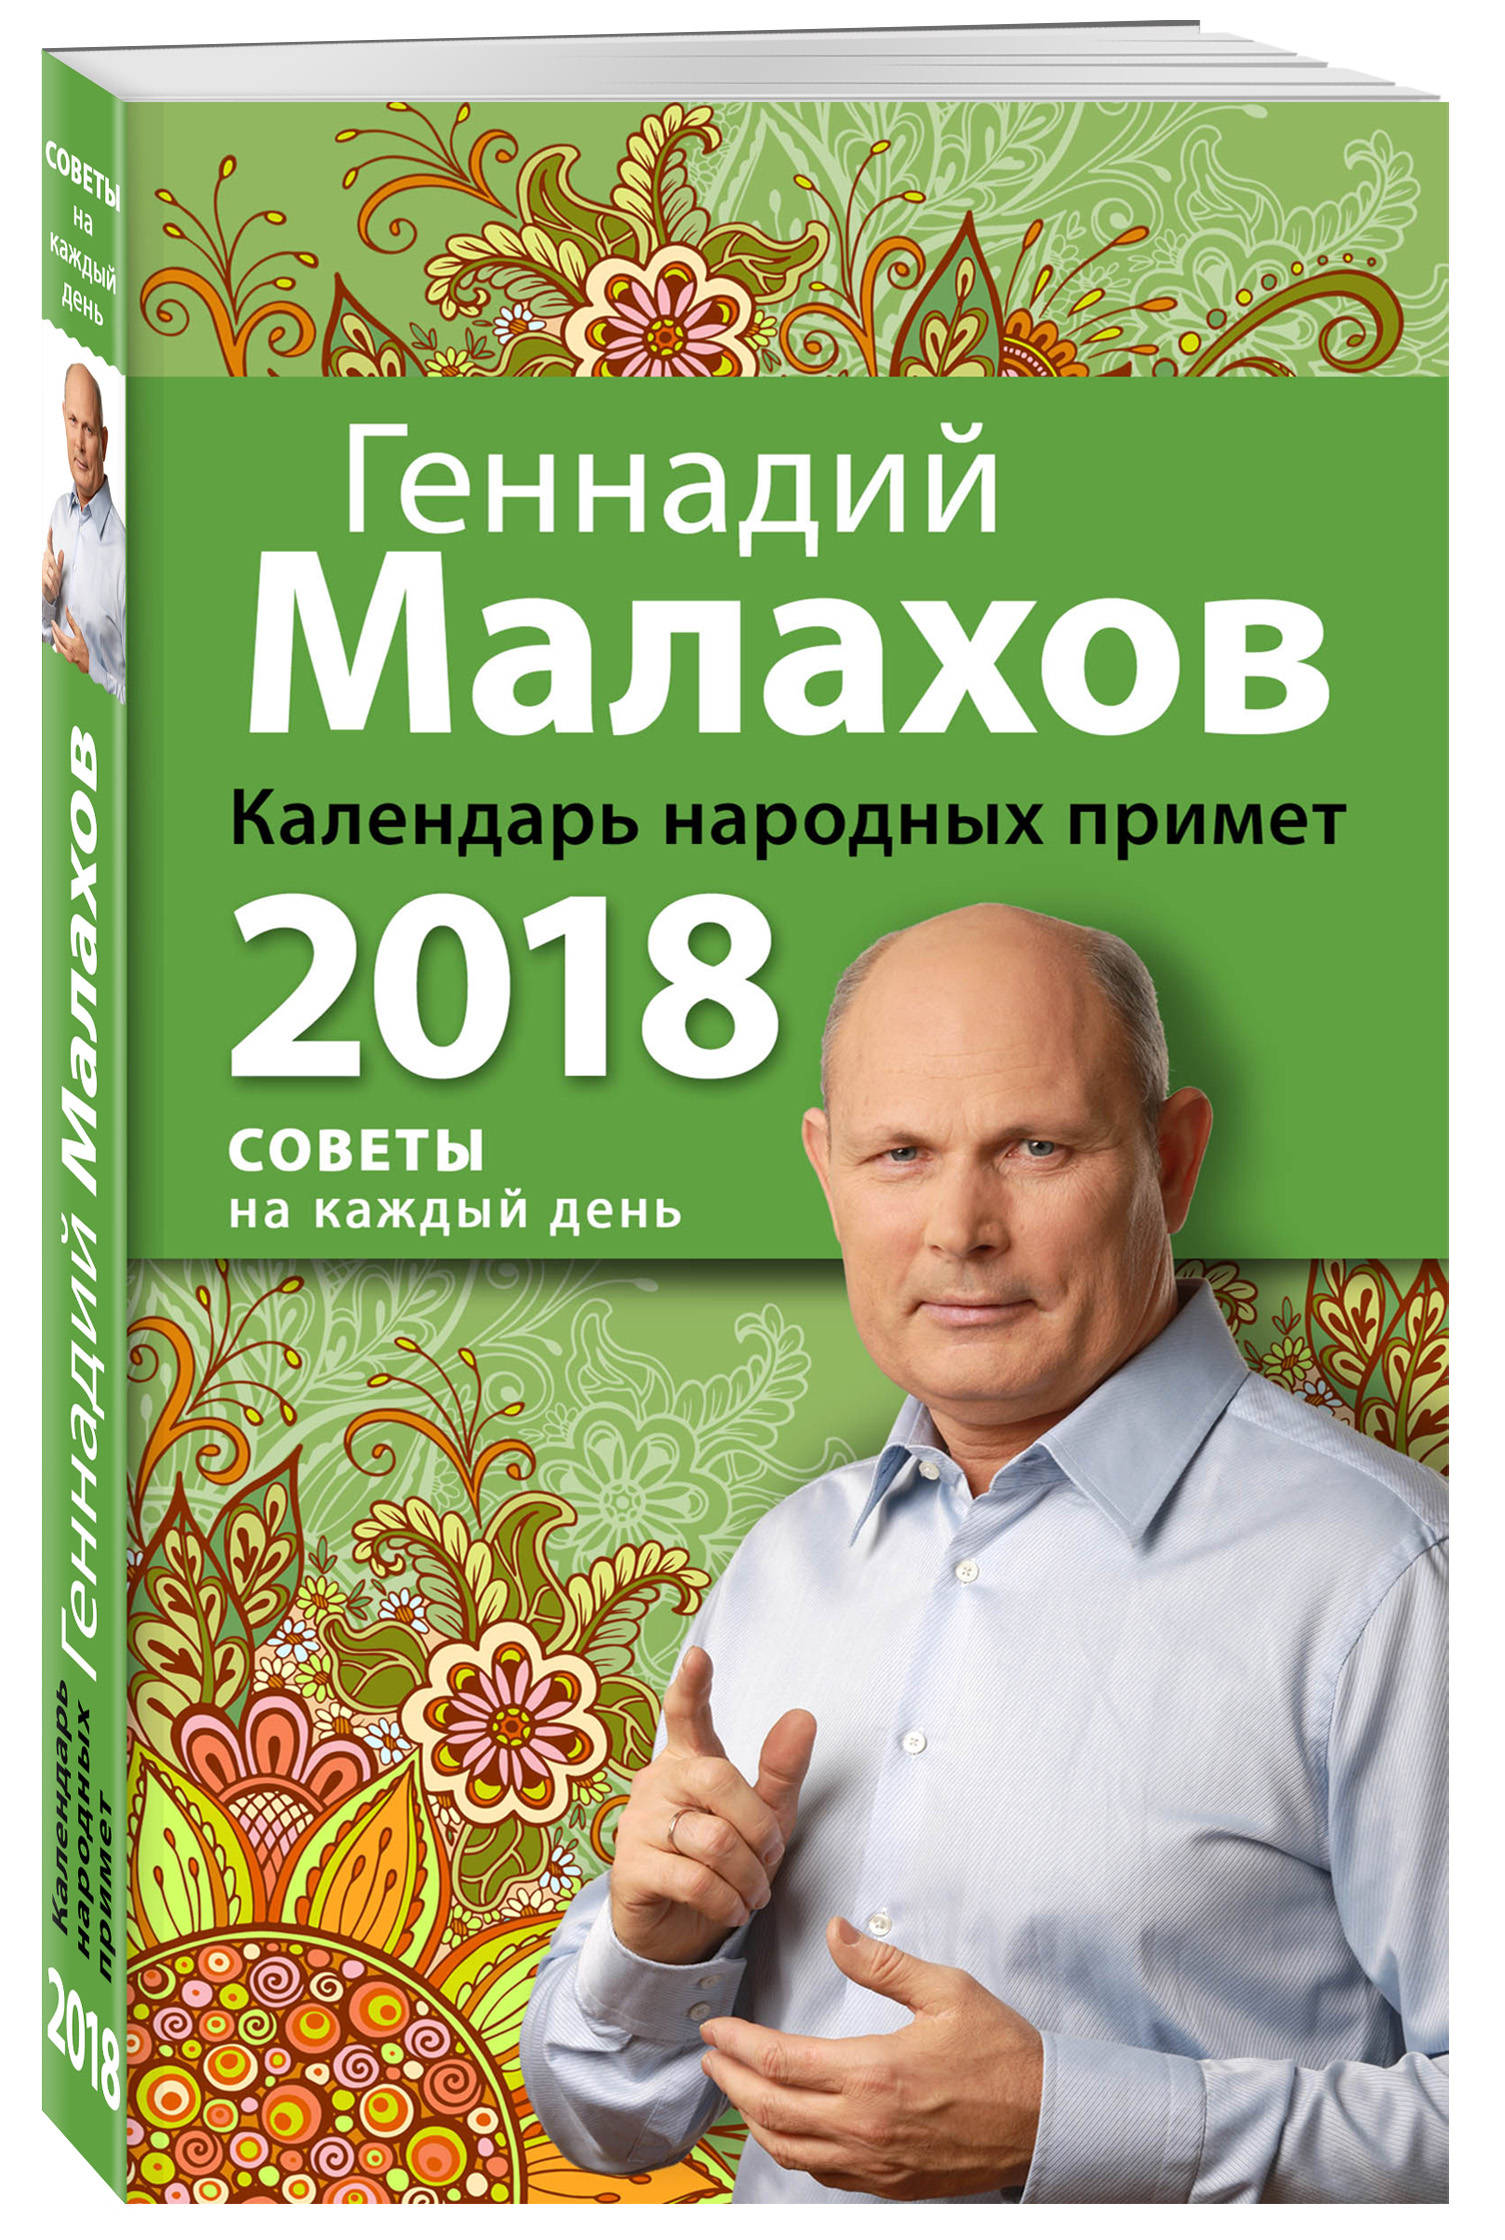 Календарь народных примет. 2018 год. Геннадий Малахов